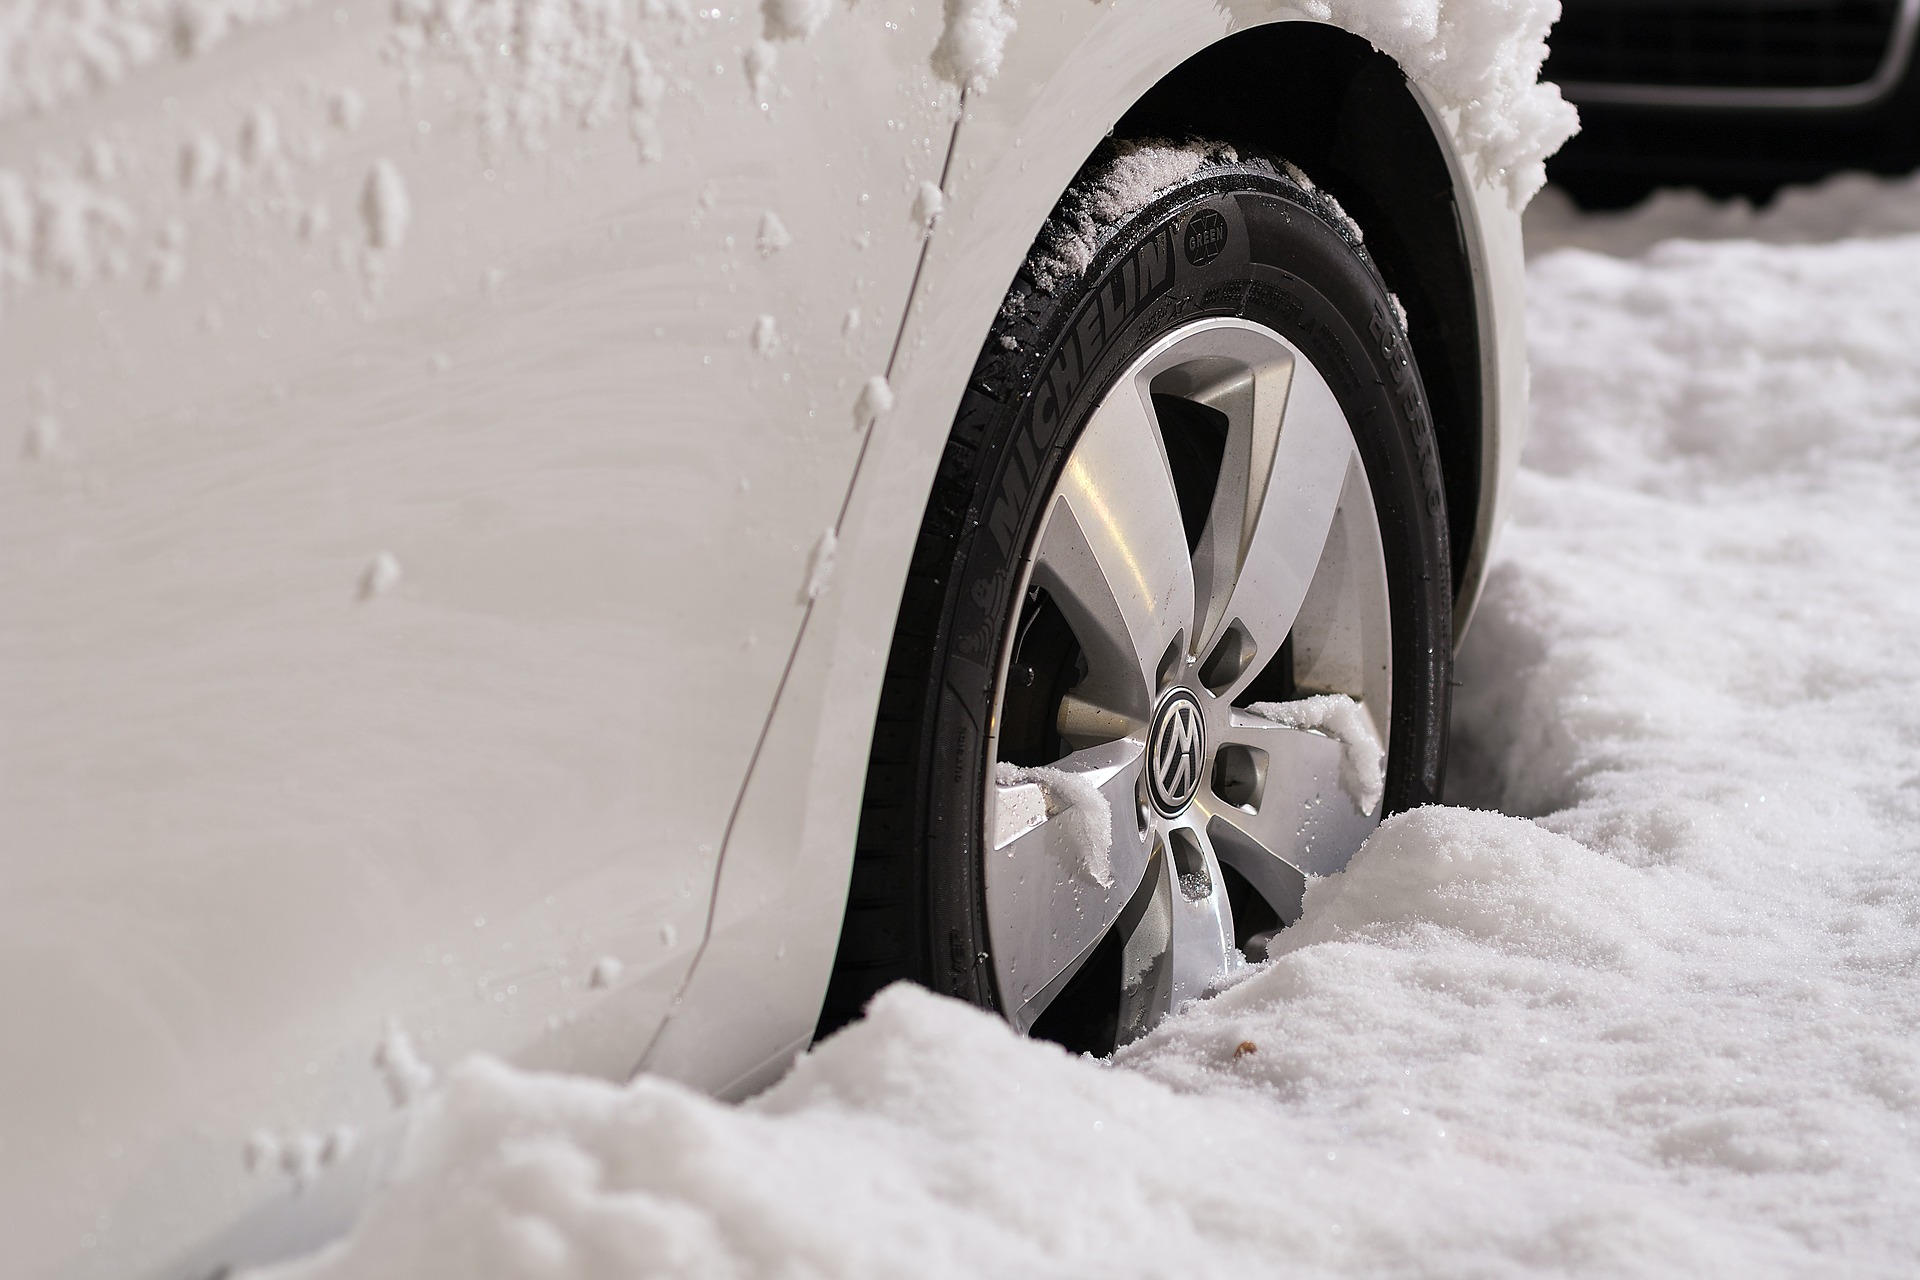 La nouvelle gamme de pneumatiques spécial hiver sont déjà disponibles chez Michelin